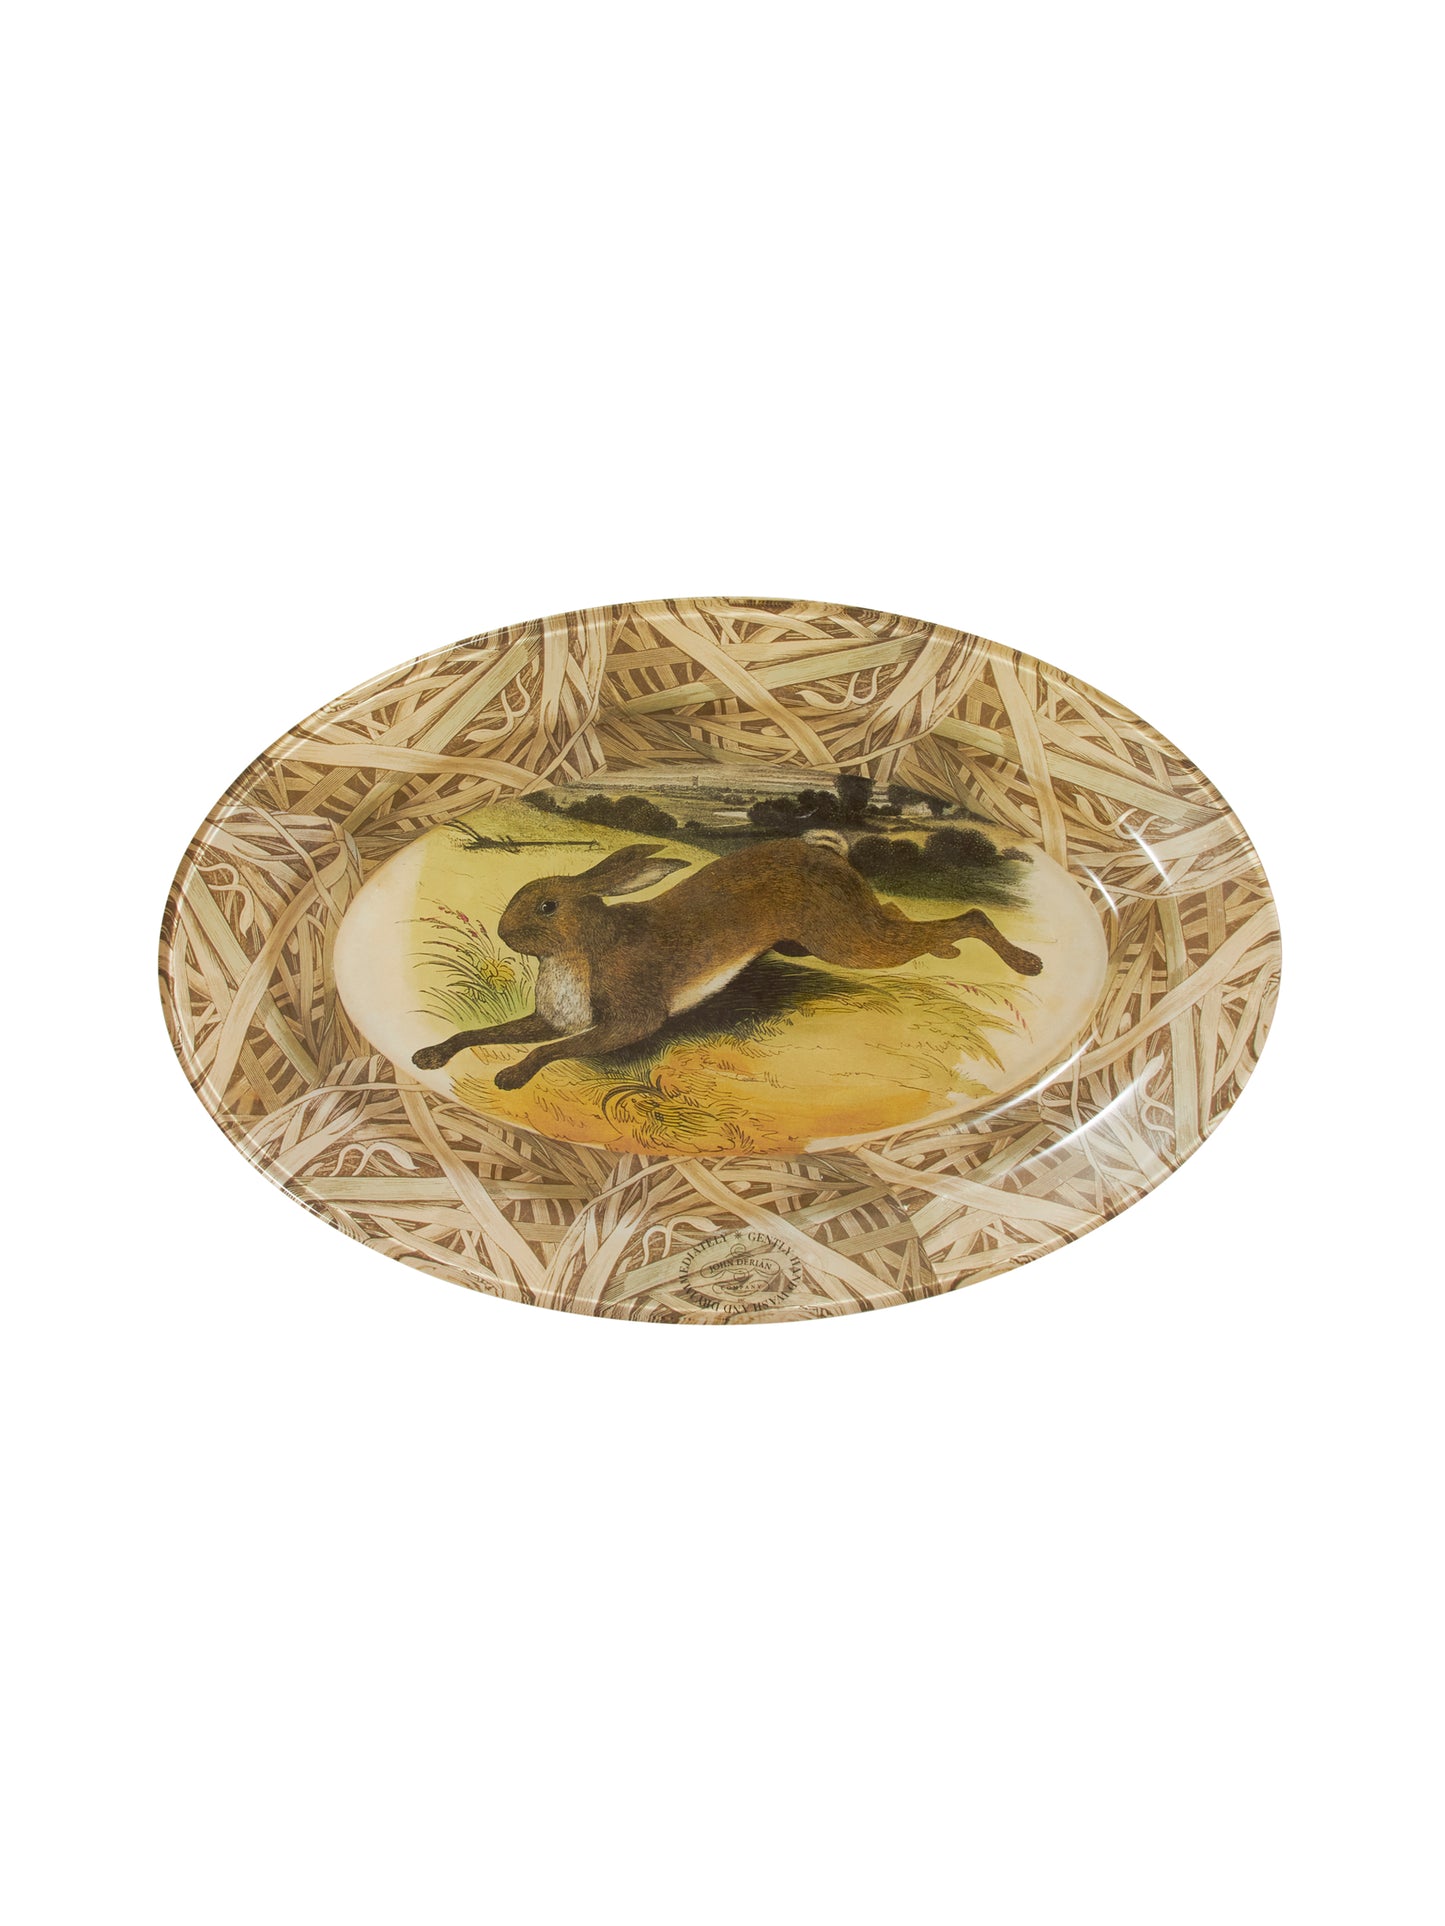 Vintage John Derian Leaping Hare in Field Oval Platter Weston Table